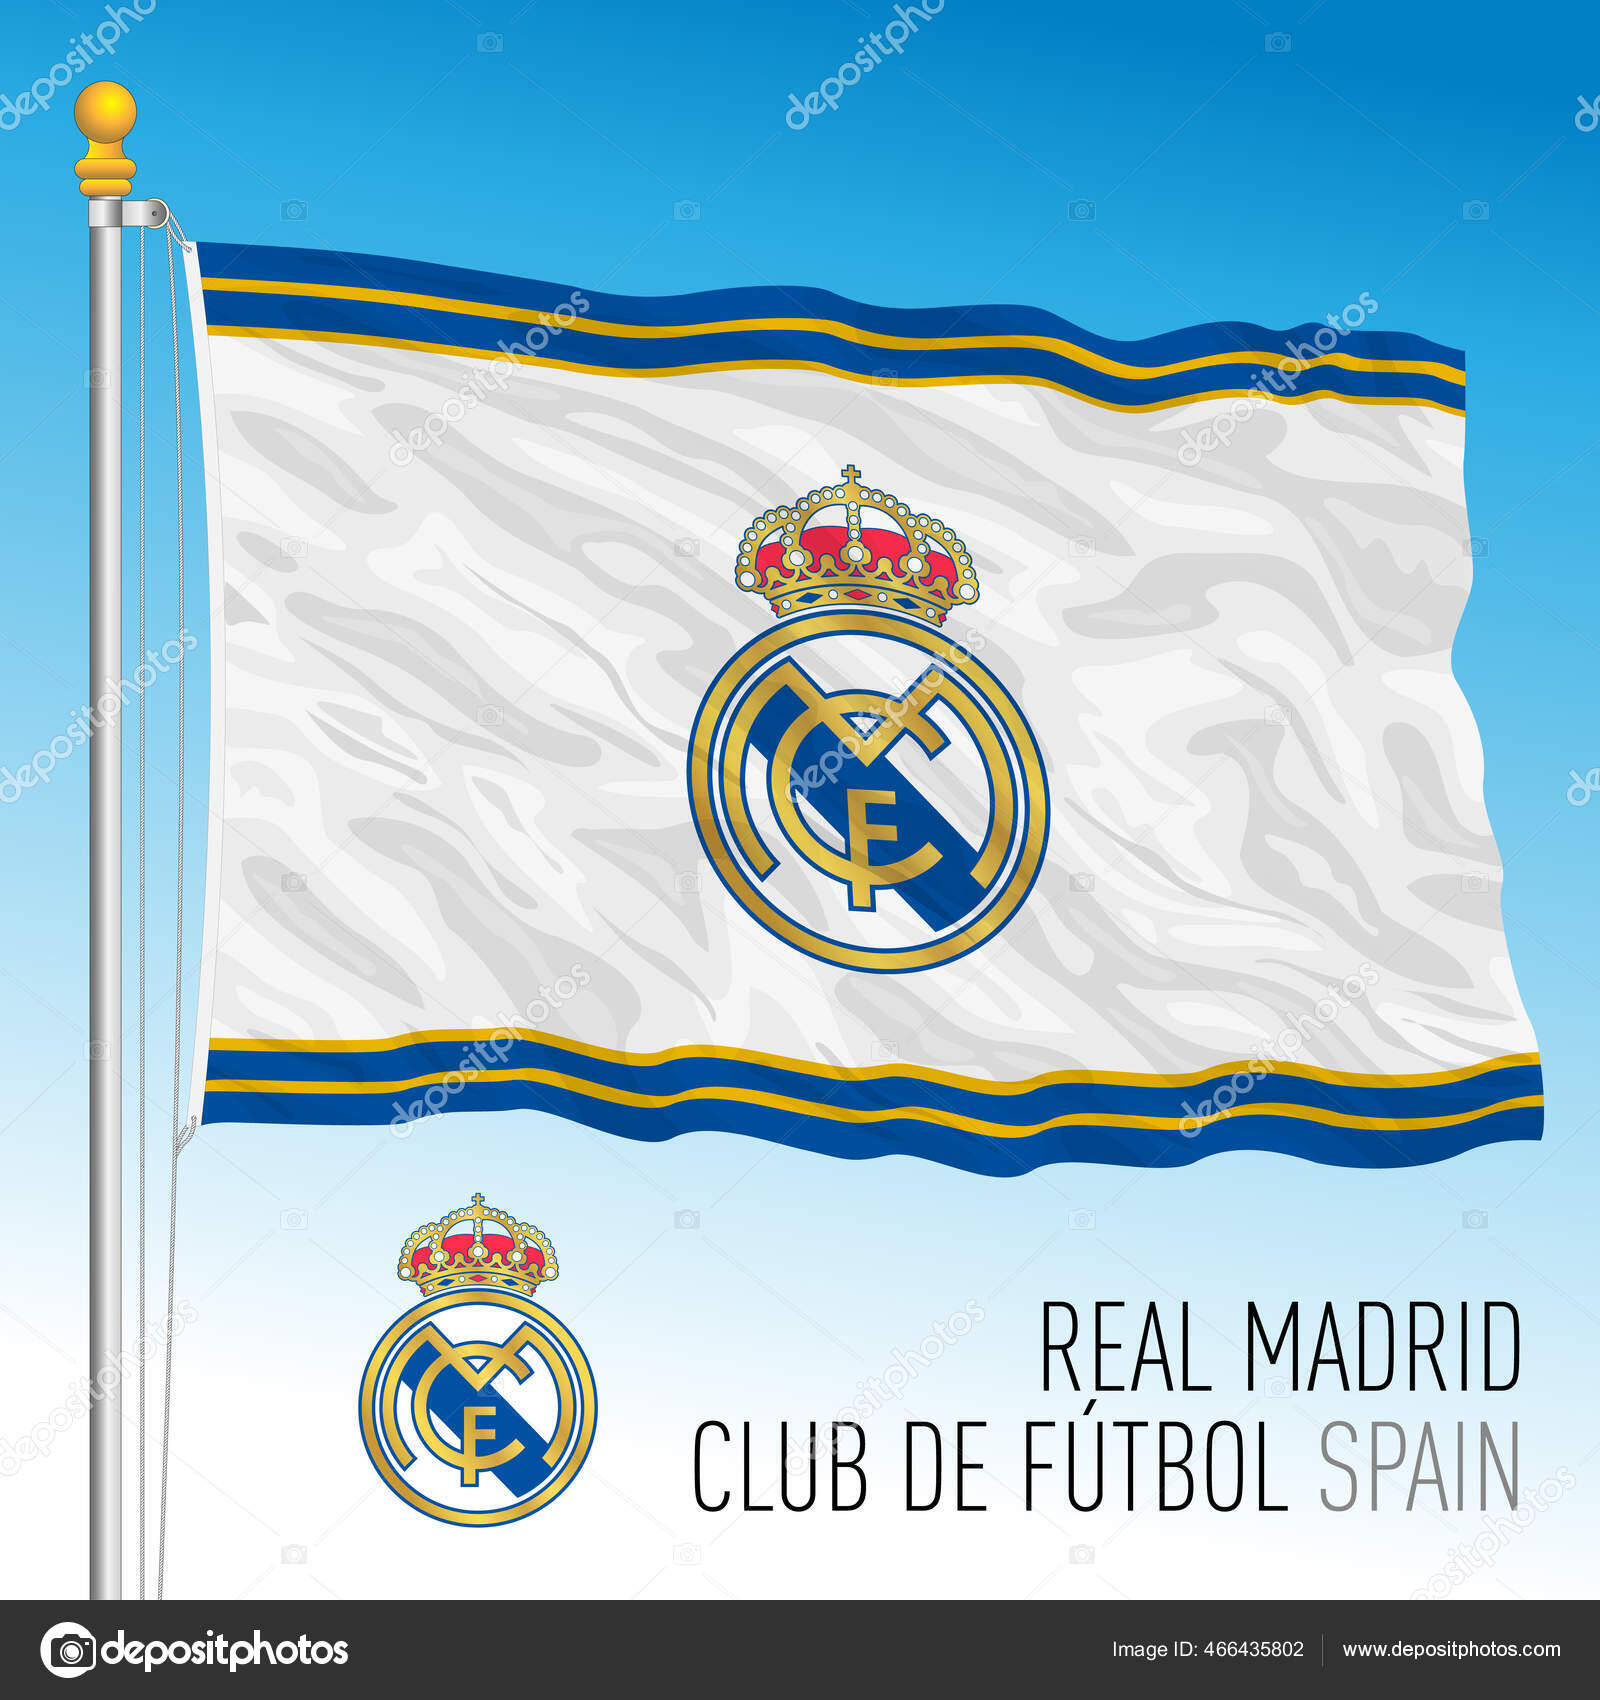  Bandera del Real Madrid : Deportes y Actividades al Aire Libre